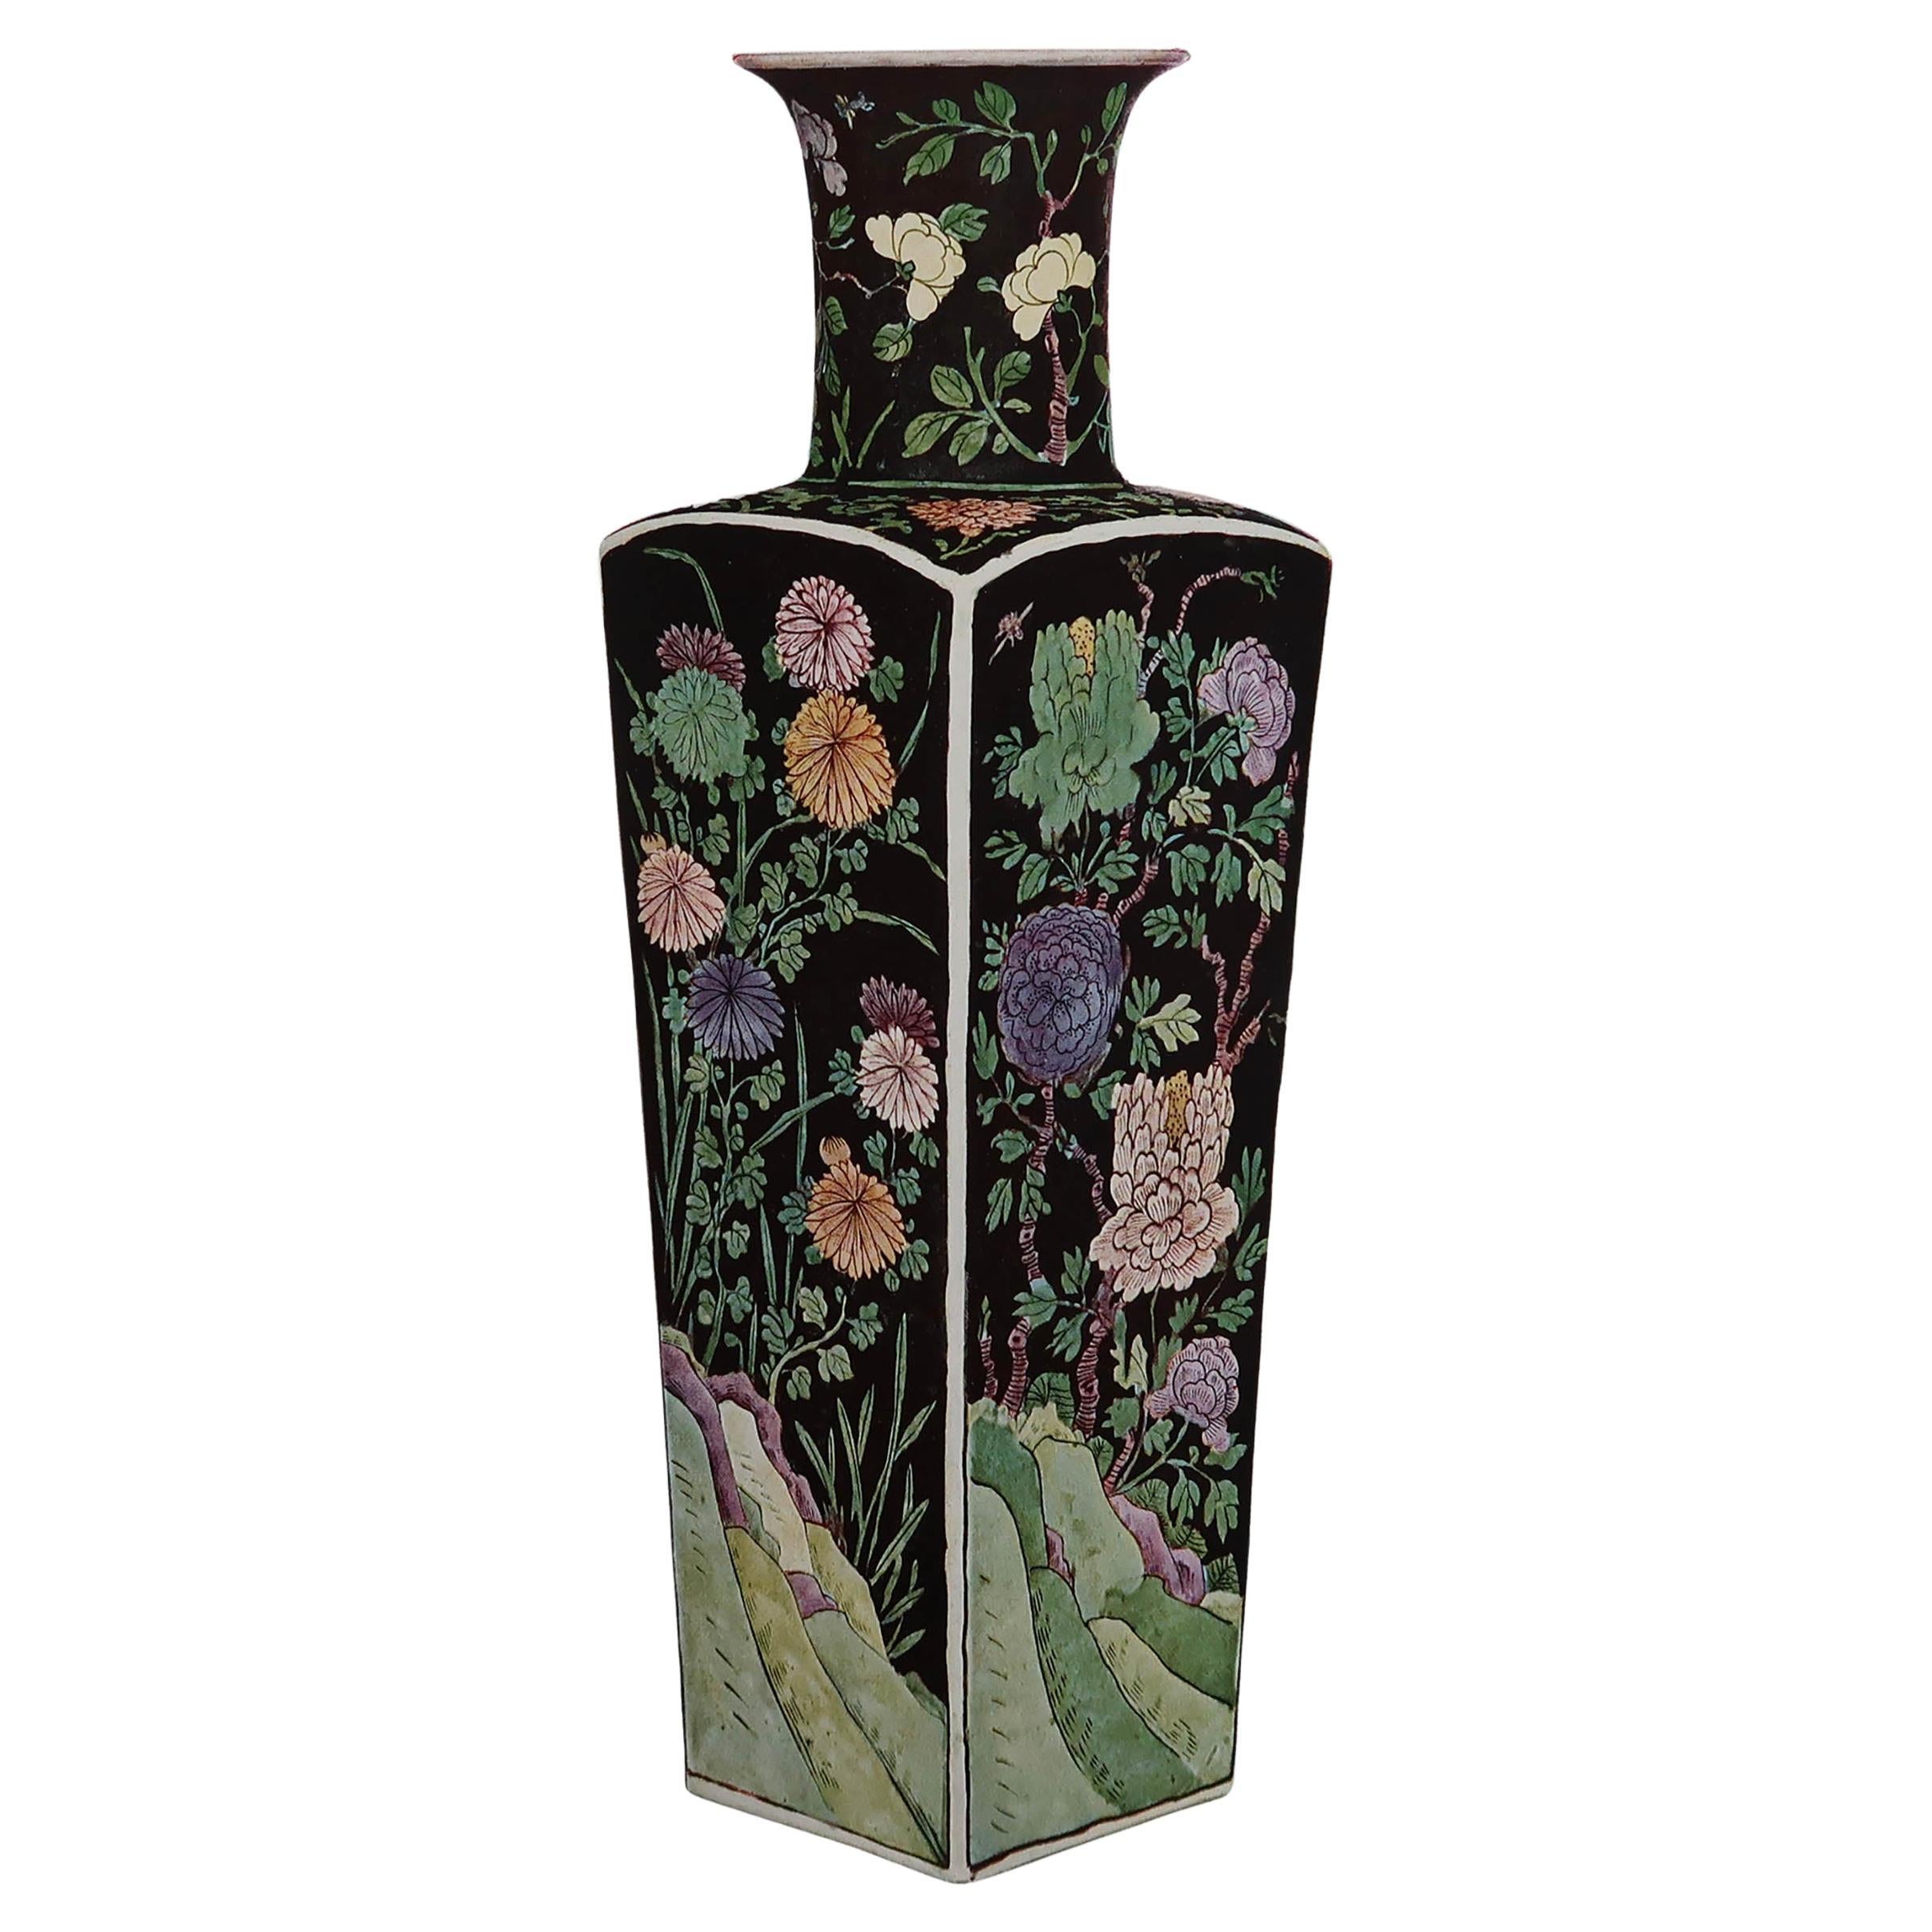 Original Antique Print of a Chinese Vase, circa 1900